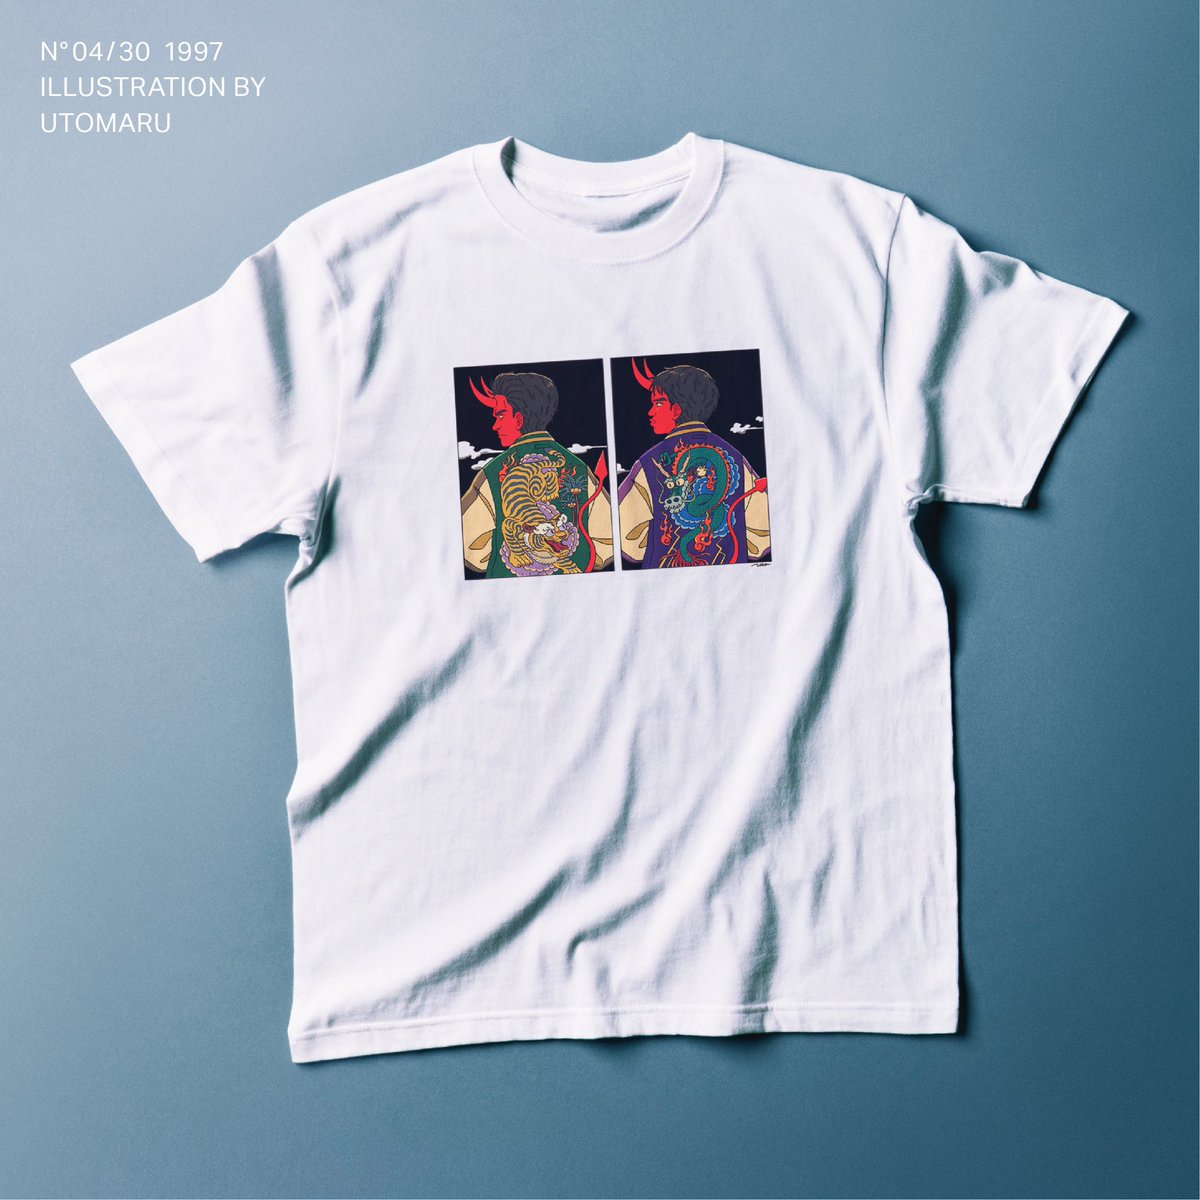 「#ダウンタウンDX30周年 Tシャツプレゼントのイラスト描きました。1997年、」|Utomaruのイラスト